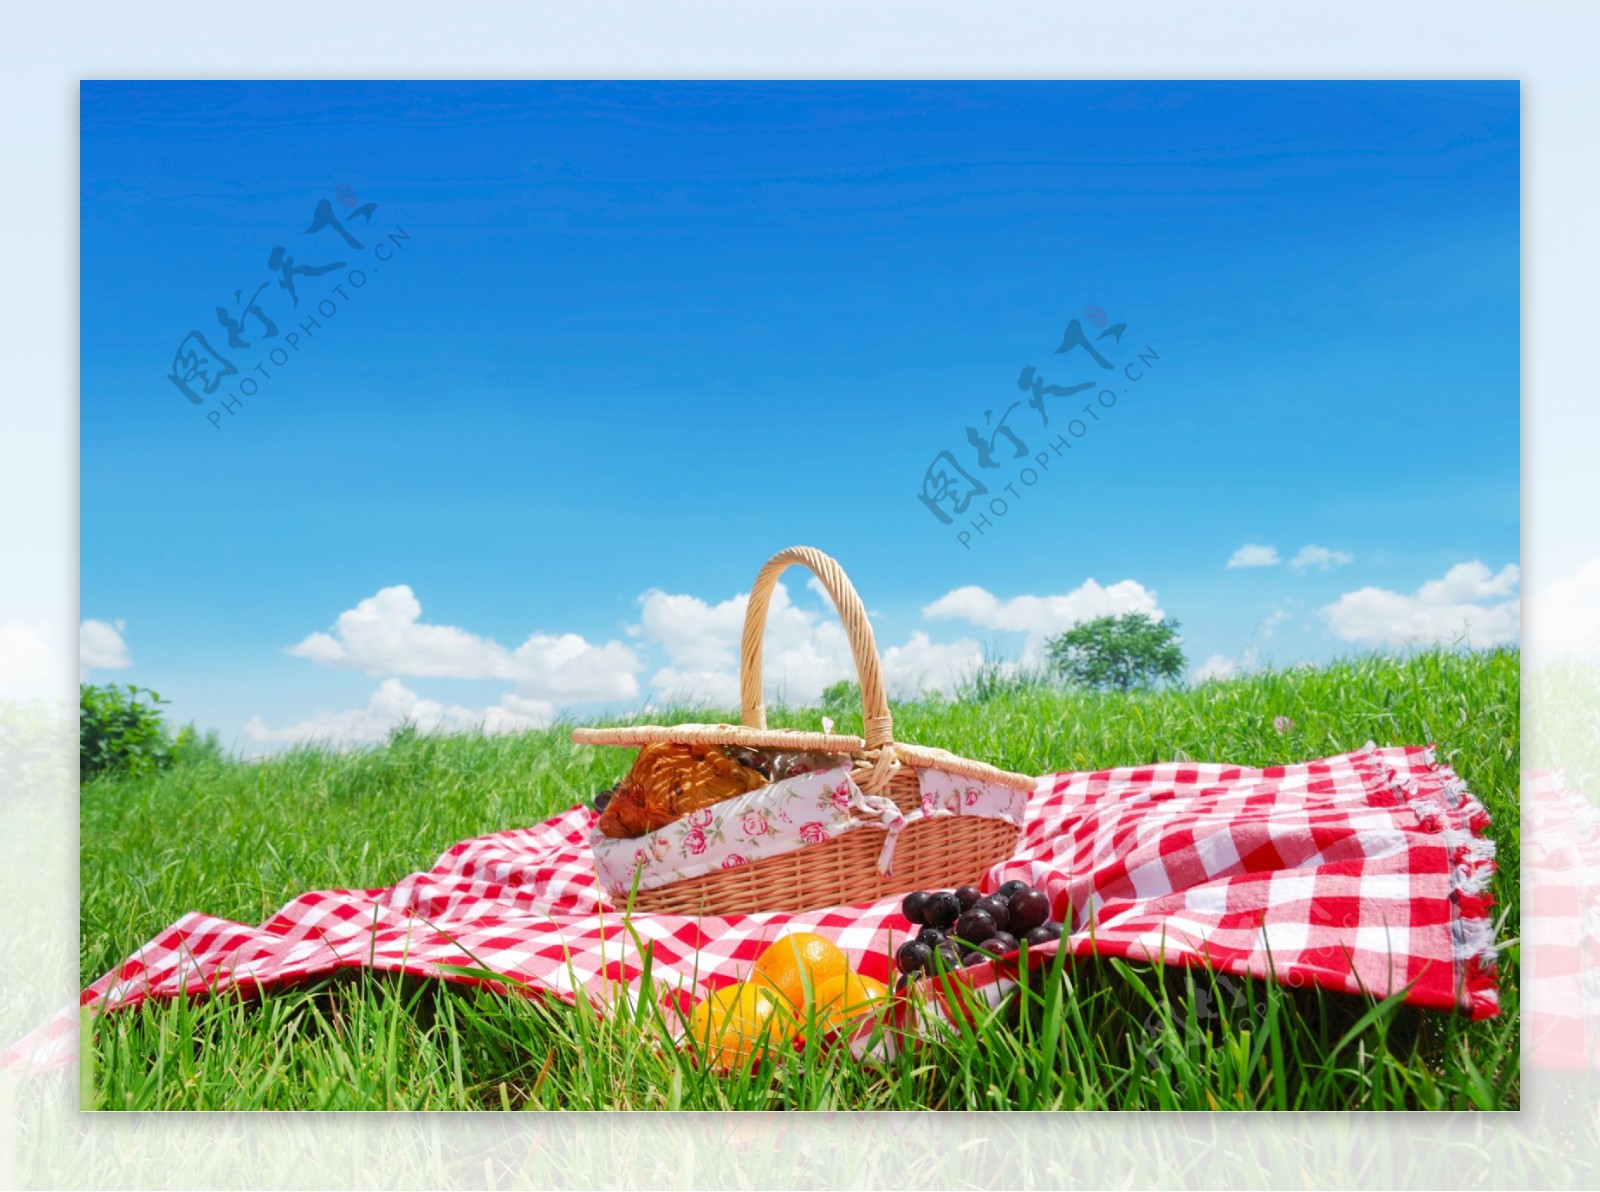 草地上的野餐篮子图片